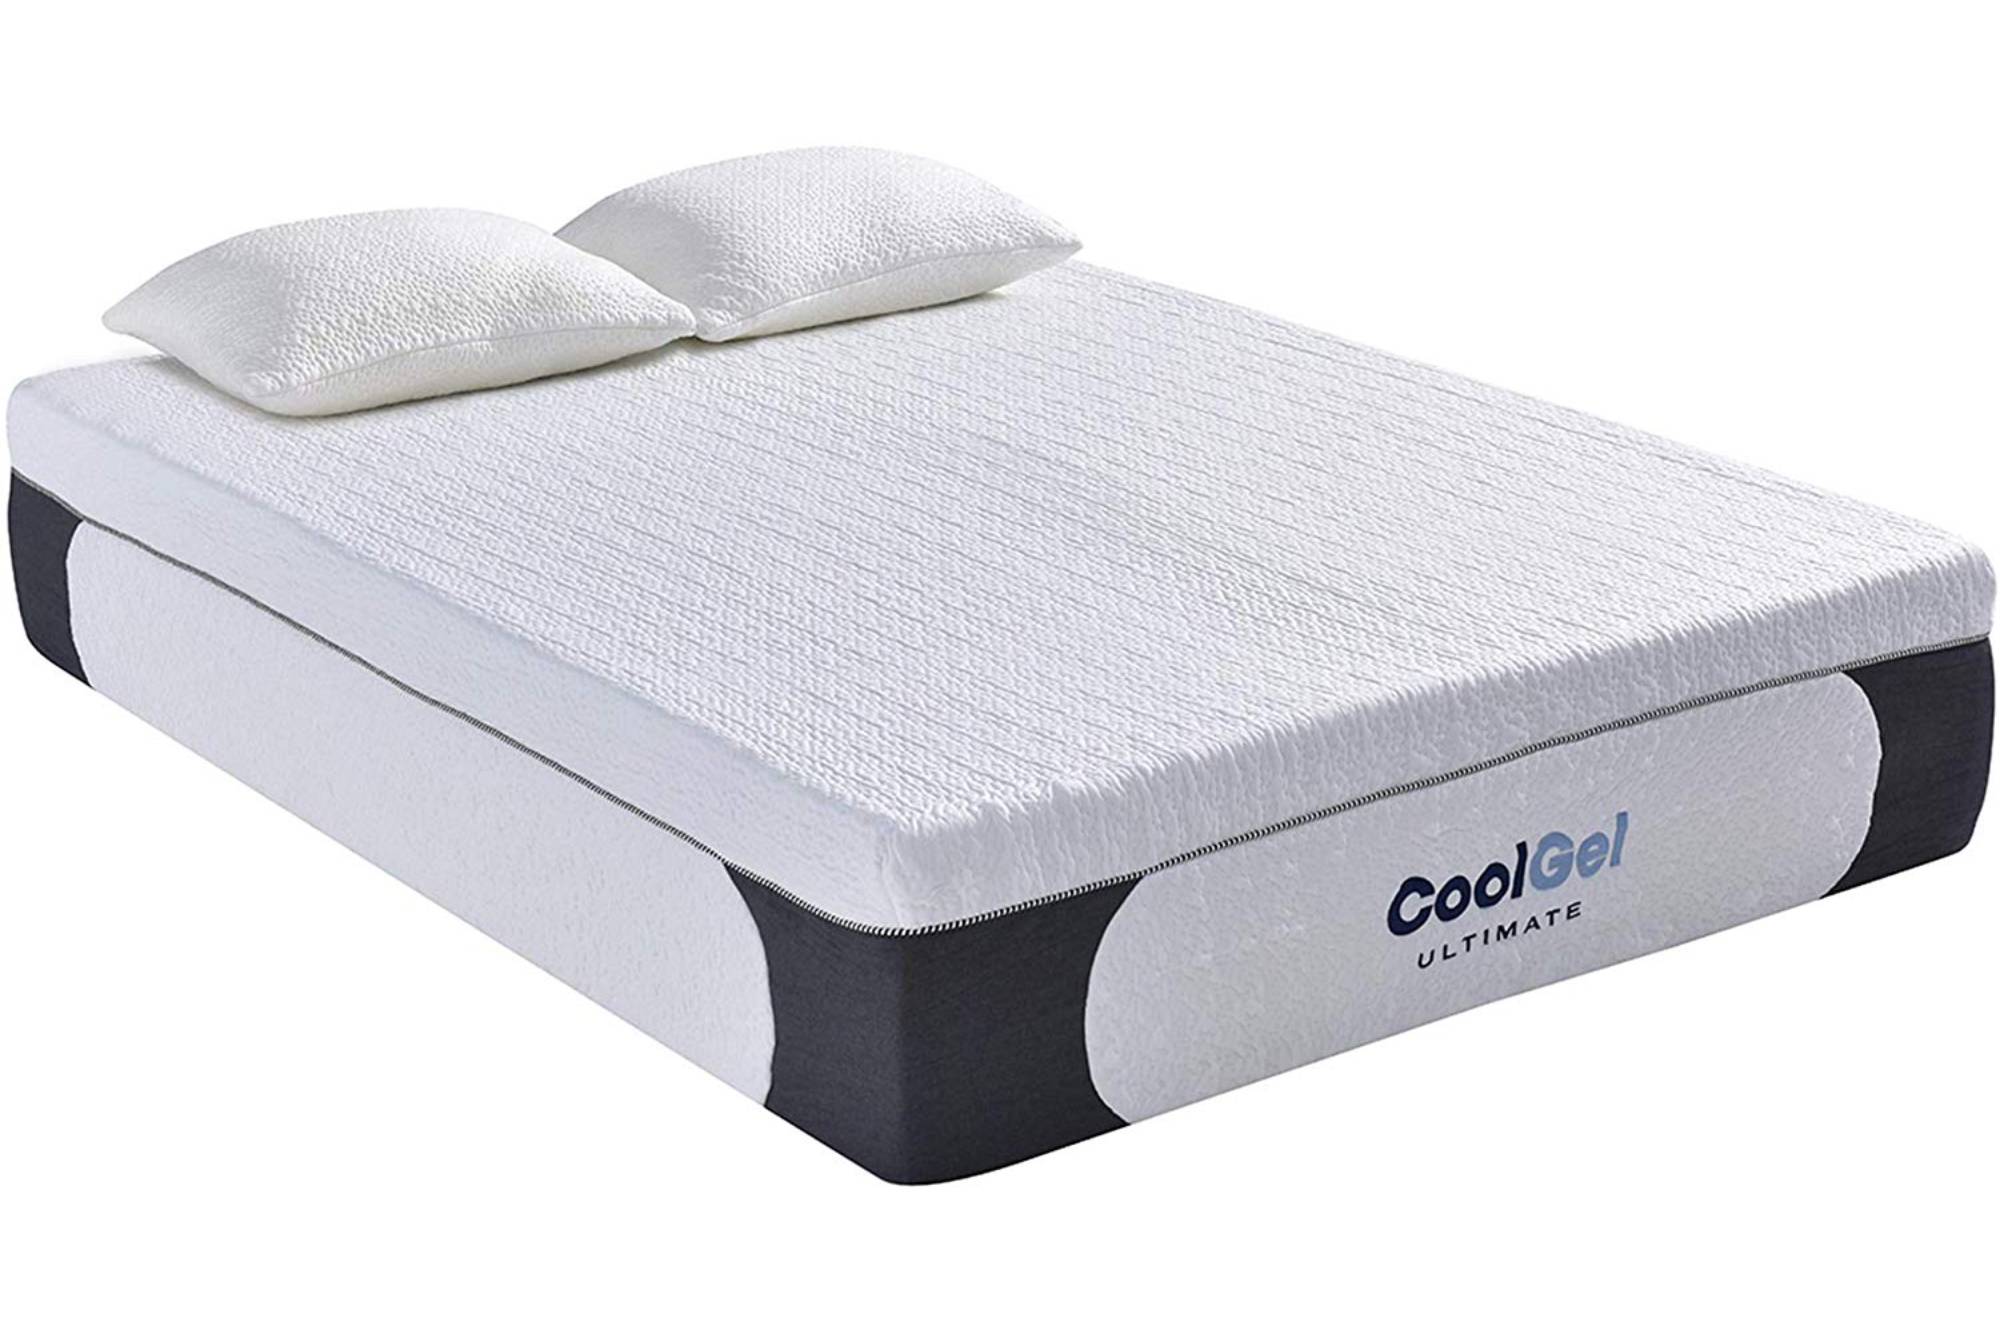 Classic Brands Cool Gel mattress